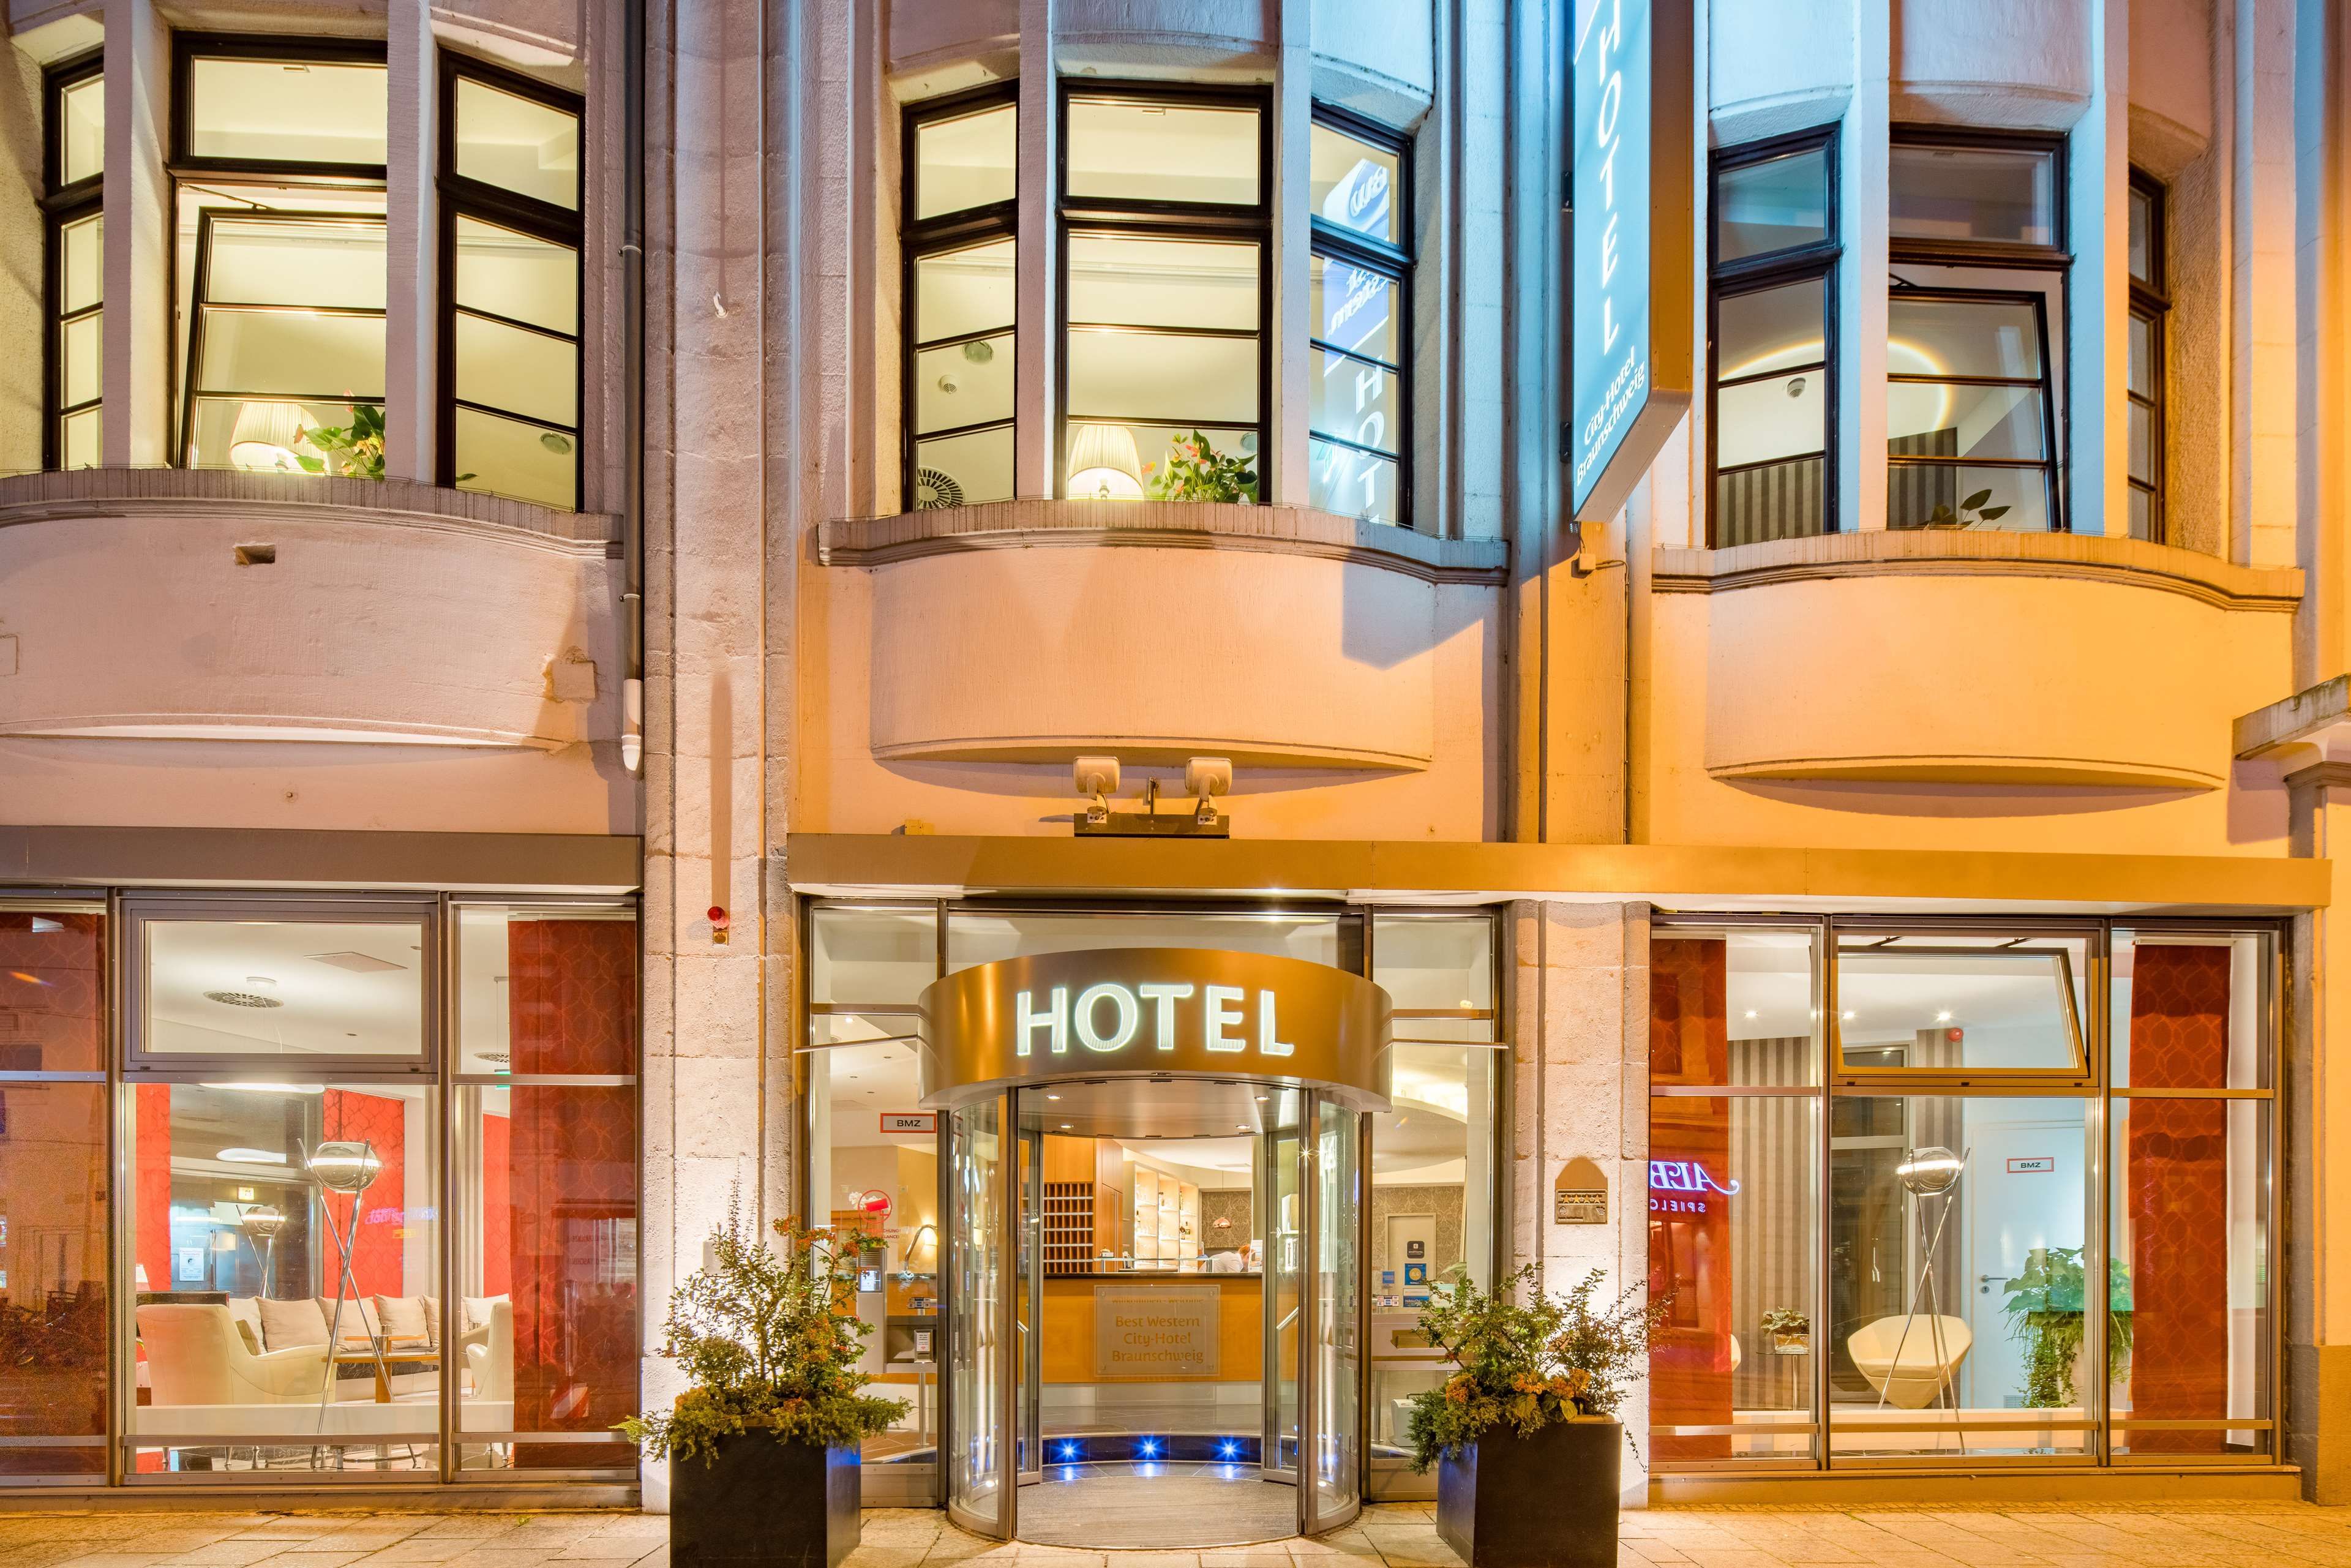 Best Western City-Hotel Braunschweig, Friedrich-Wilhelm-Strasse 26-29 in Braunschweig